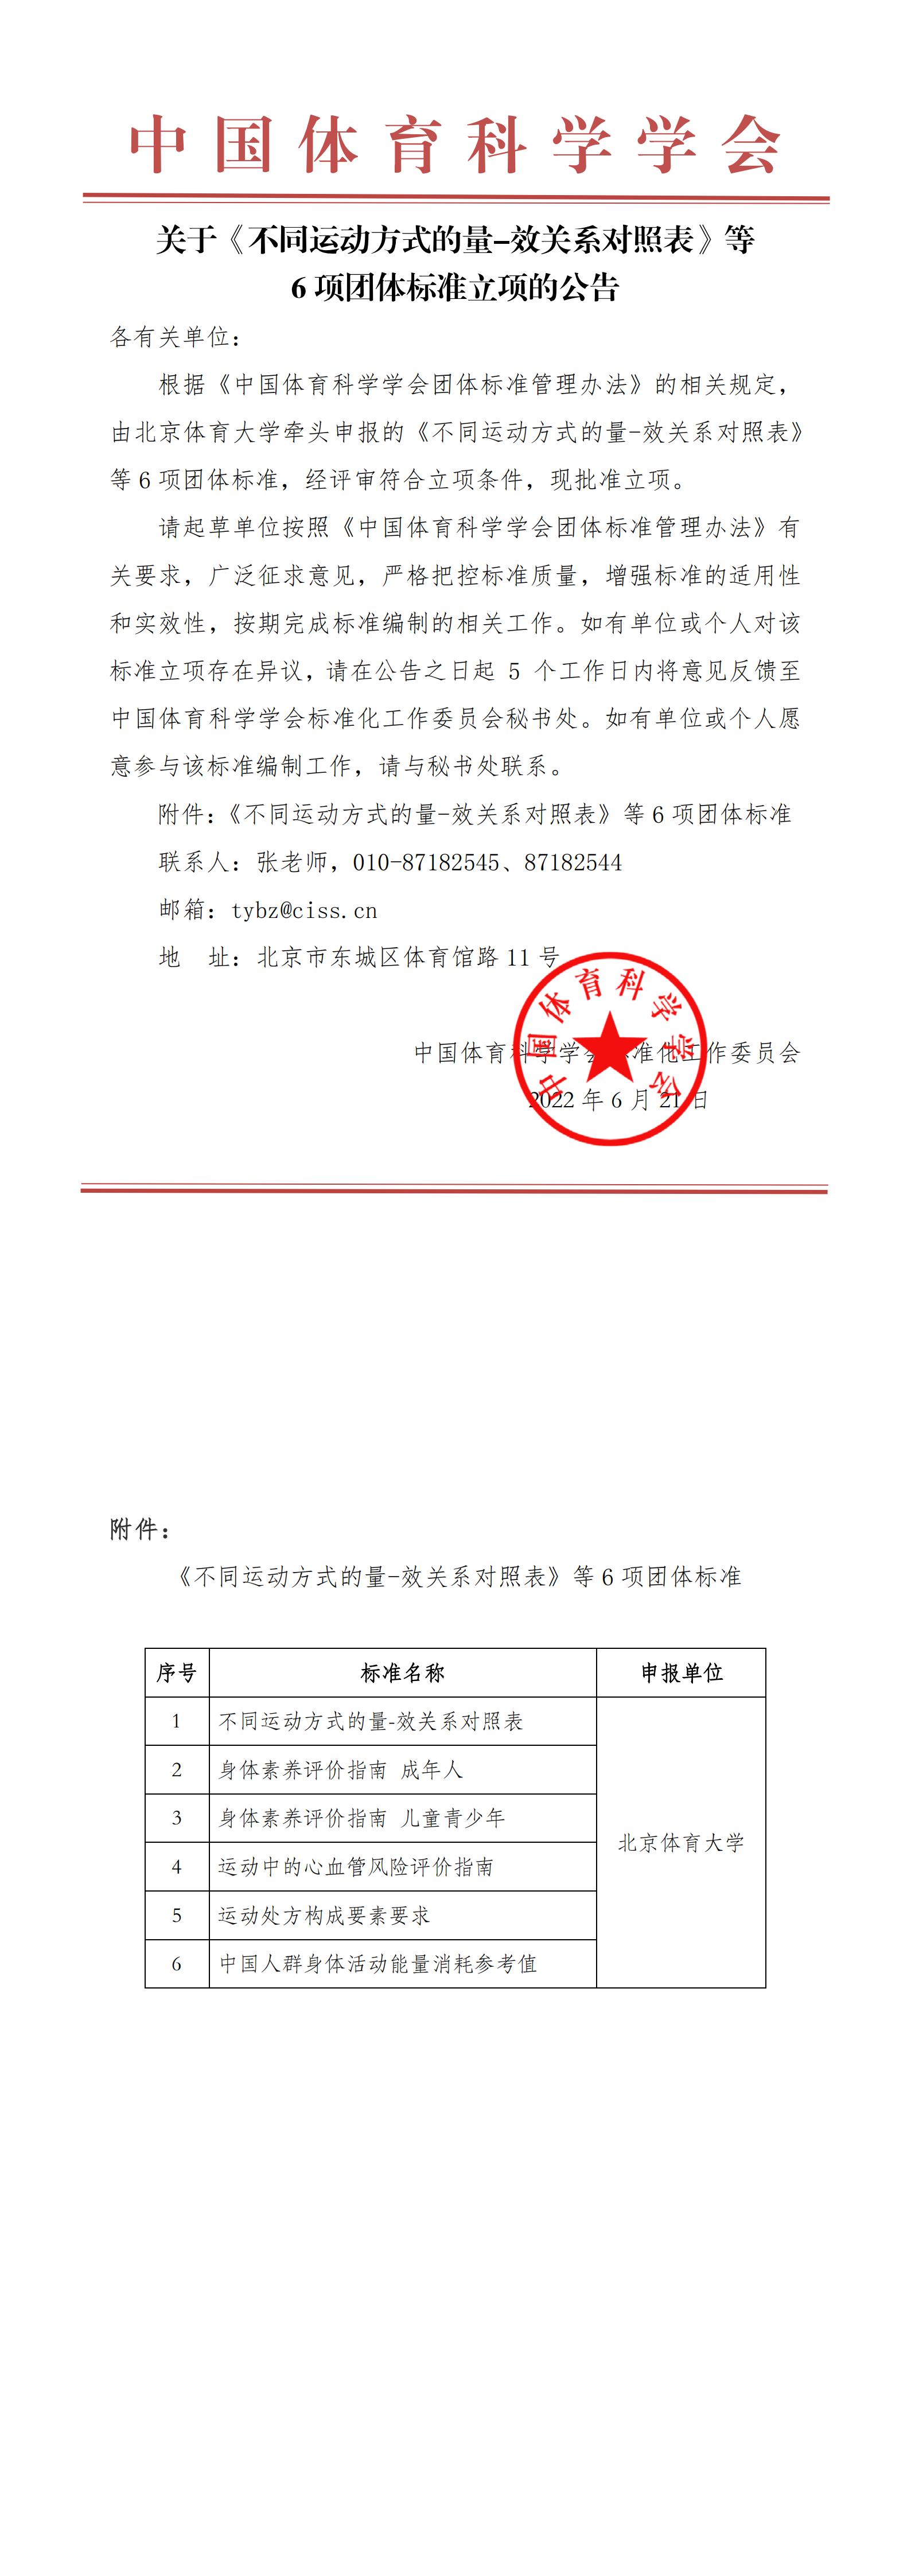 2022-06-17 中国体育科学学会关于《不同运动方式的量-效关系对照表》等6项团体标准立项的公告(1)_00.jpg